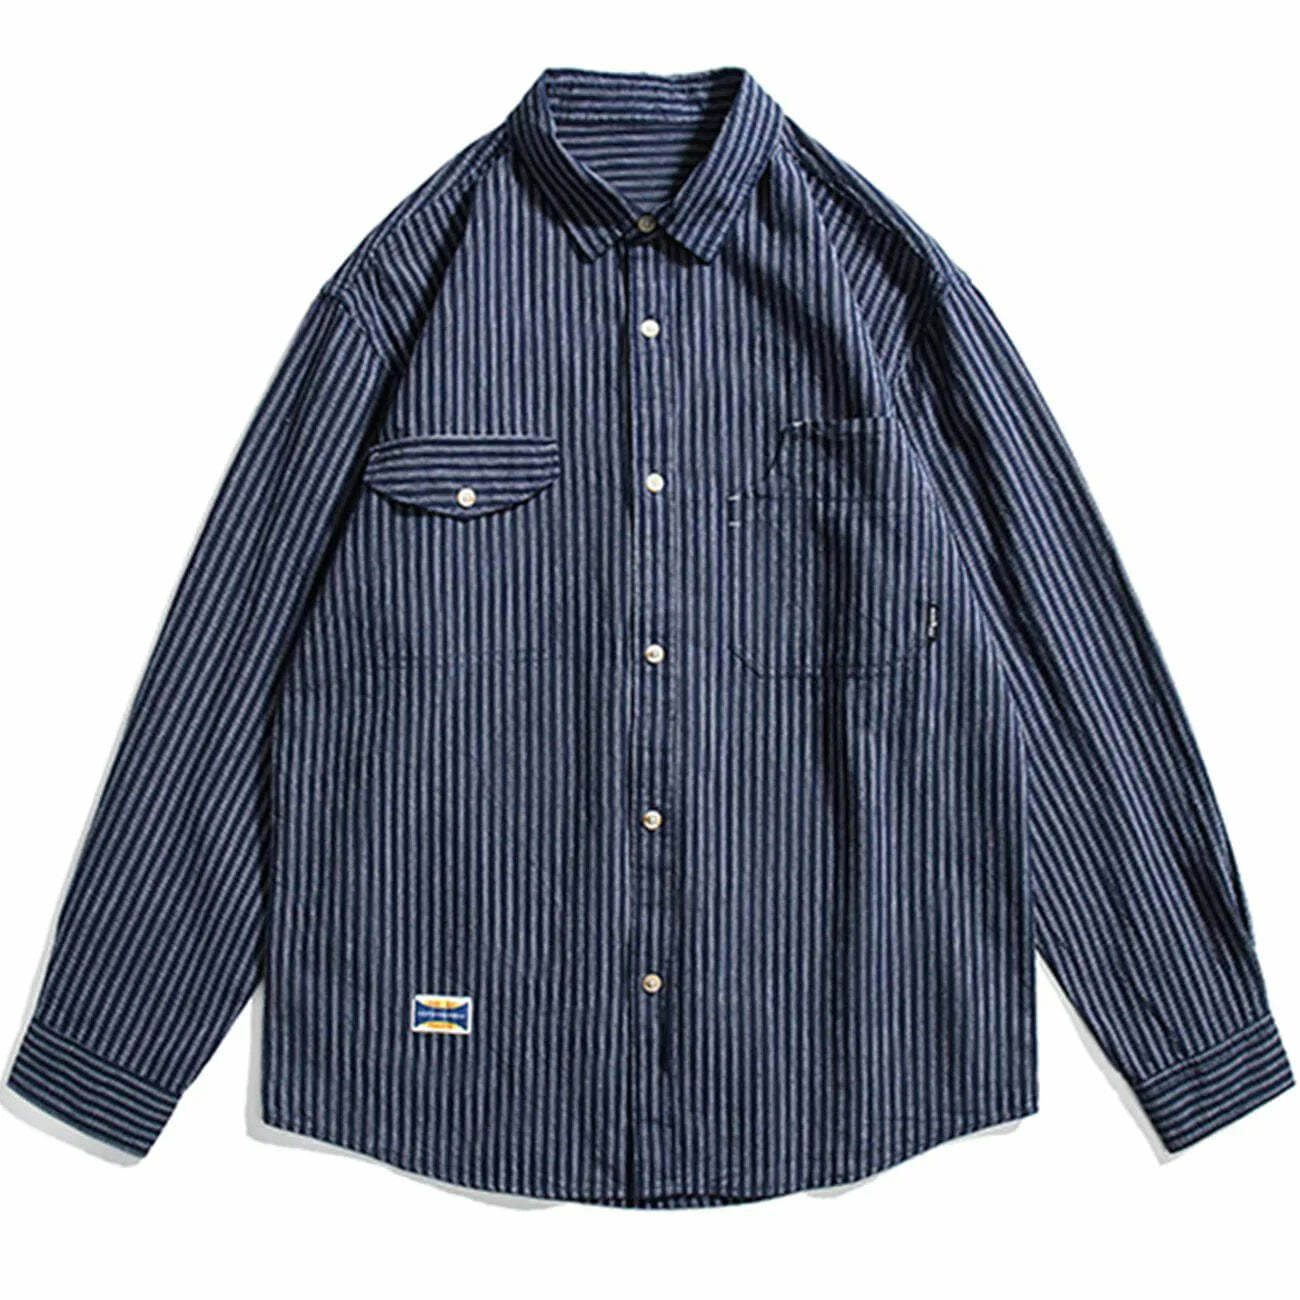 longline longsleeved shirt edgy & urban streetwear 2862